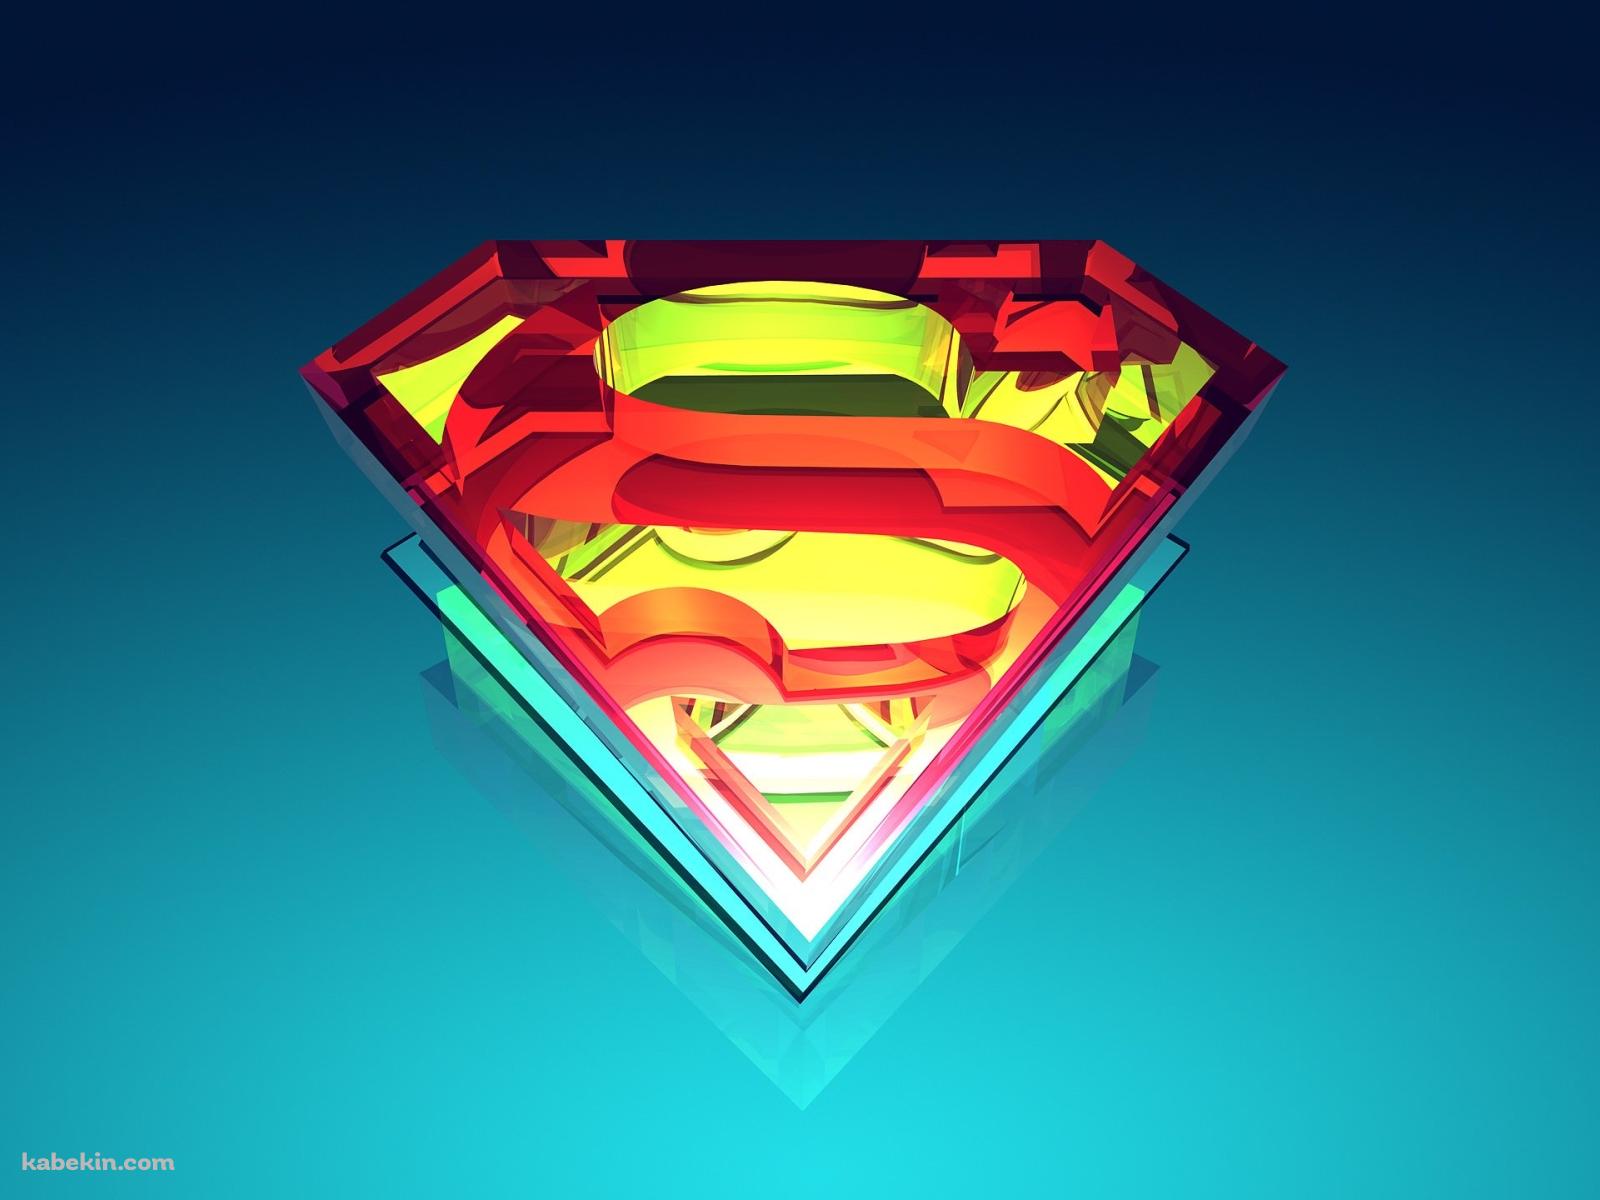 スーパーマン 3Dロゴの壁紙(1600px x 1200px) 高画質 PC・デスクトップ用